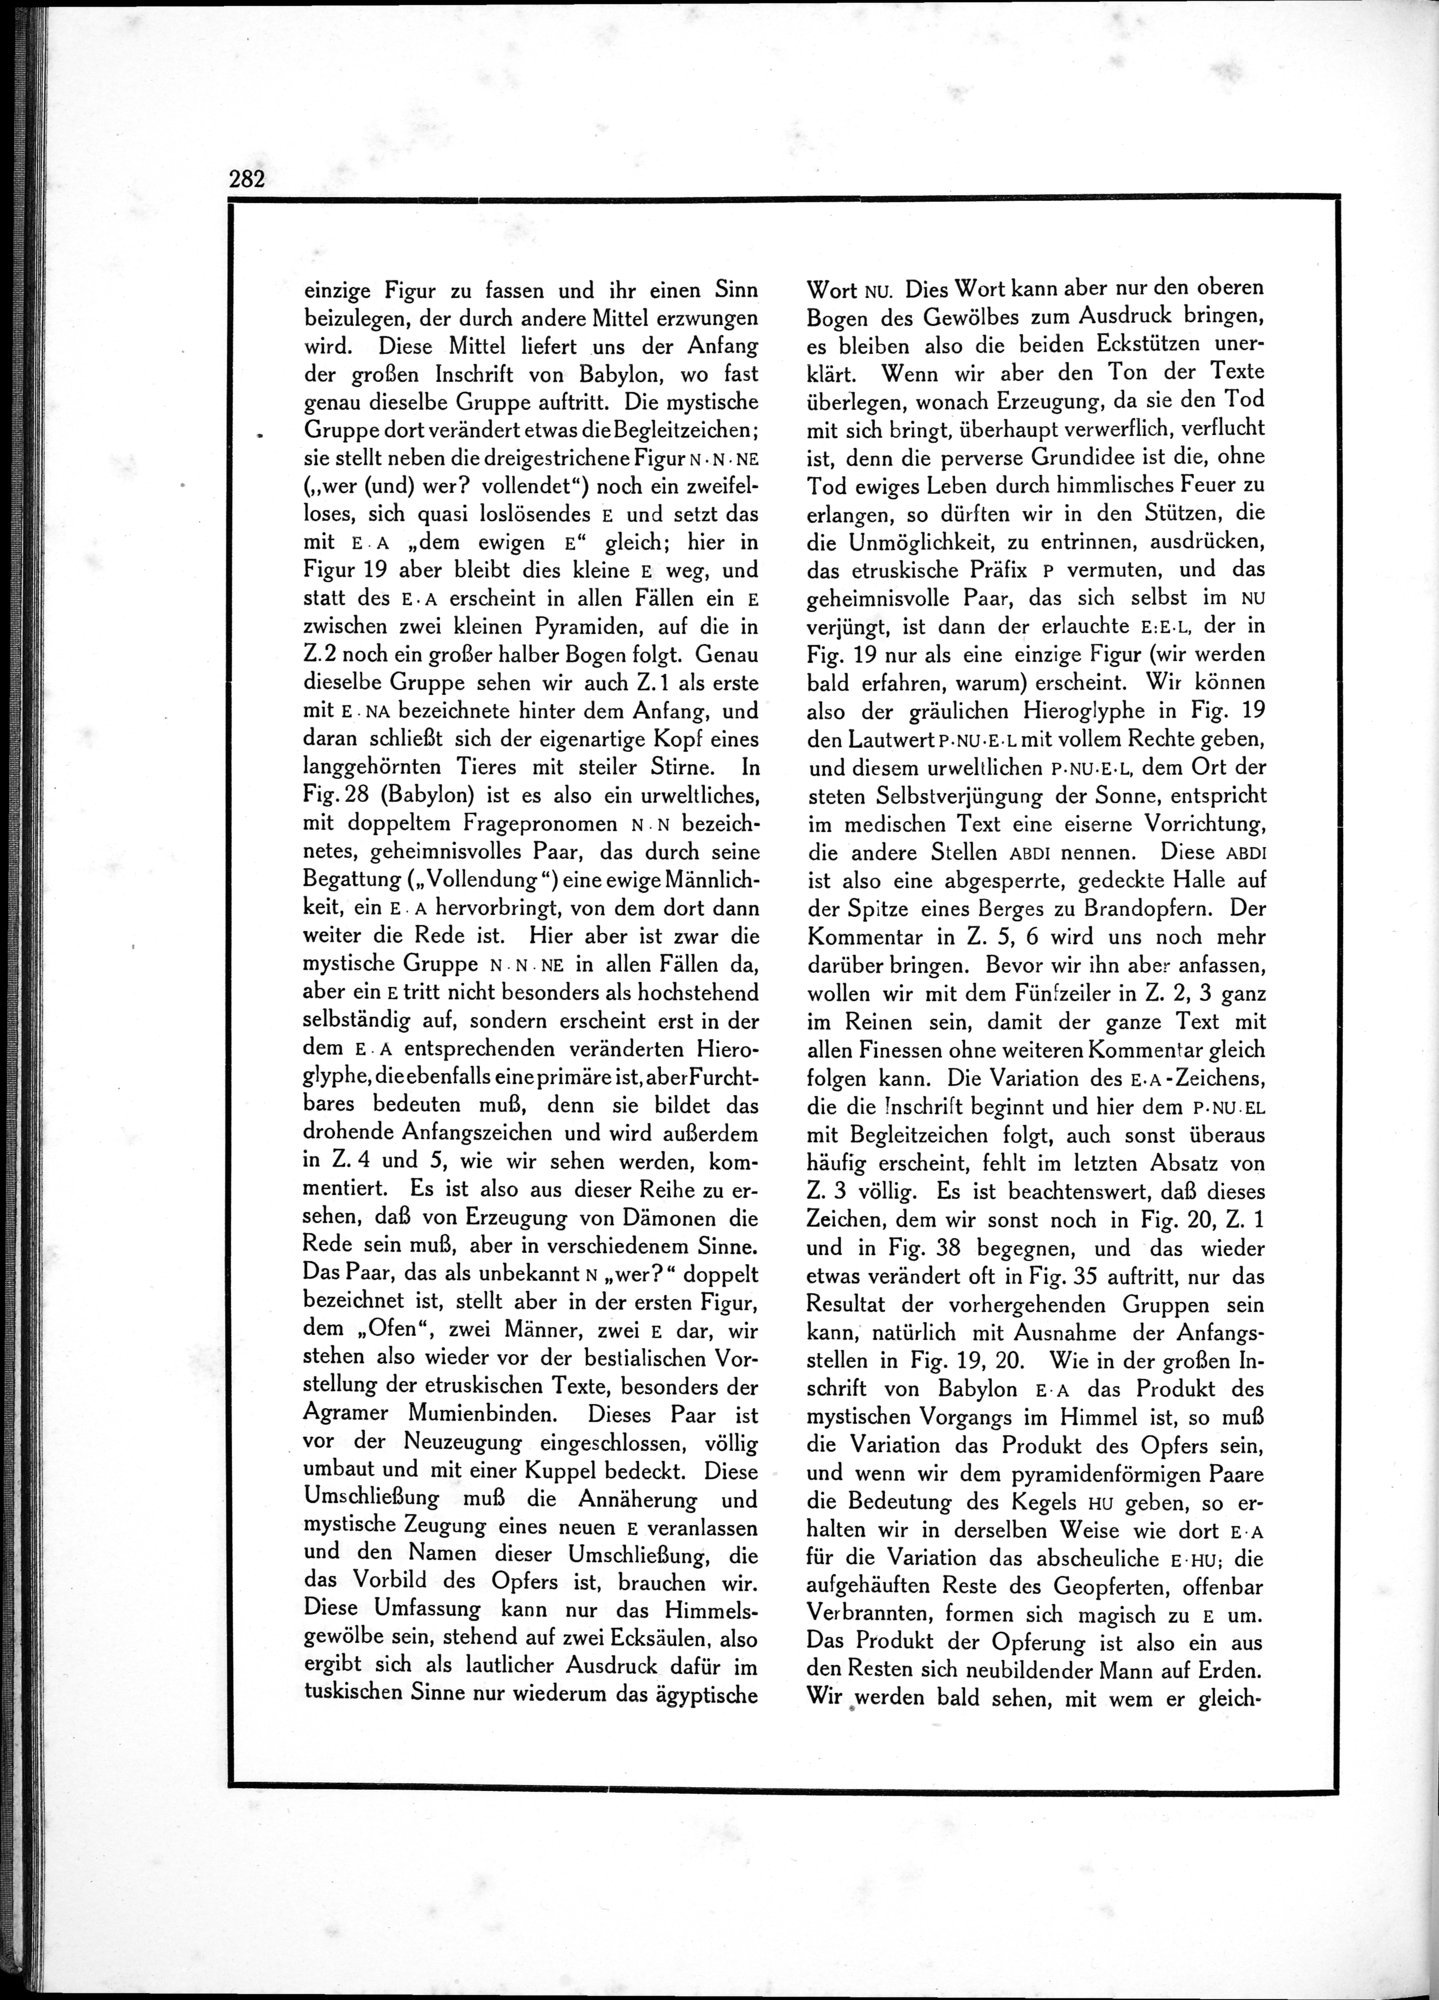 Die Teufel des Avesta und Ihre Beziehungen zur Ikonographie des Buddhismus Zentral-Asiens : vol.1 / Page 286 (Grayscale High Resolution Image)